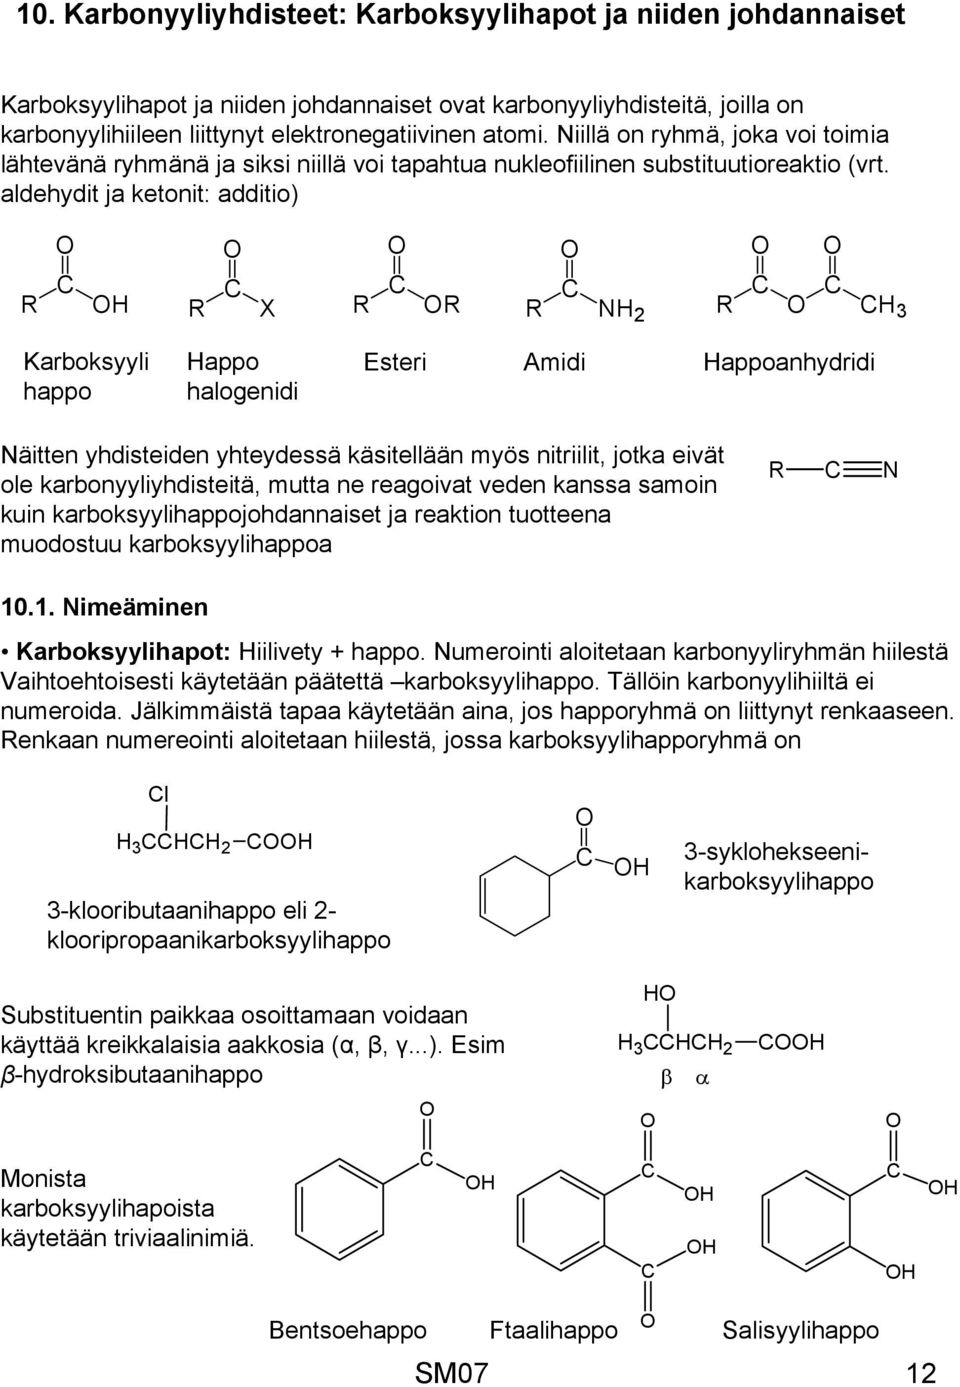 aldehydit ja ketonit: additio) X 2 3 Karboksyyli happo appo halogenidi Esteri Amidi appoanhydridi äitten yhdisteiden yhteydessä käsitellään myös nitriilit, jotka eivät ole karbonyyliyhdisteitä, mutta